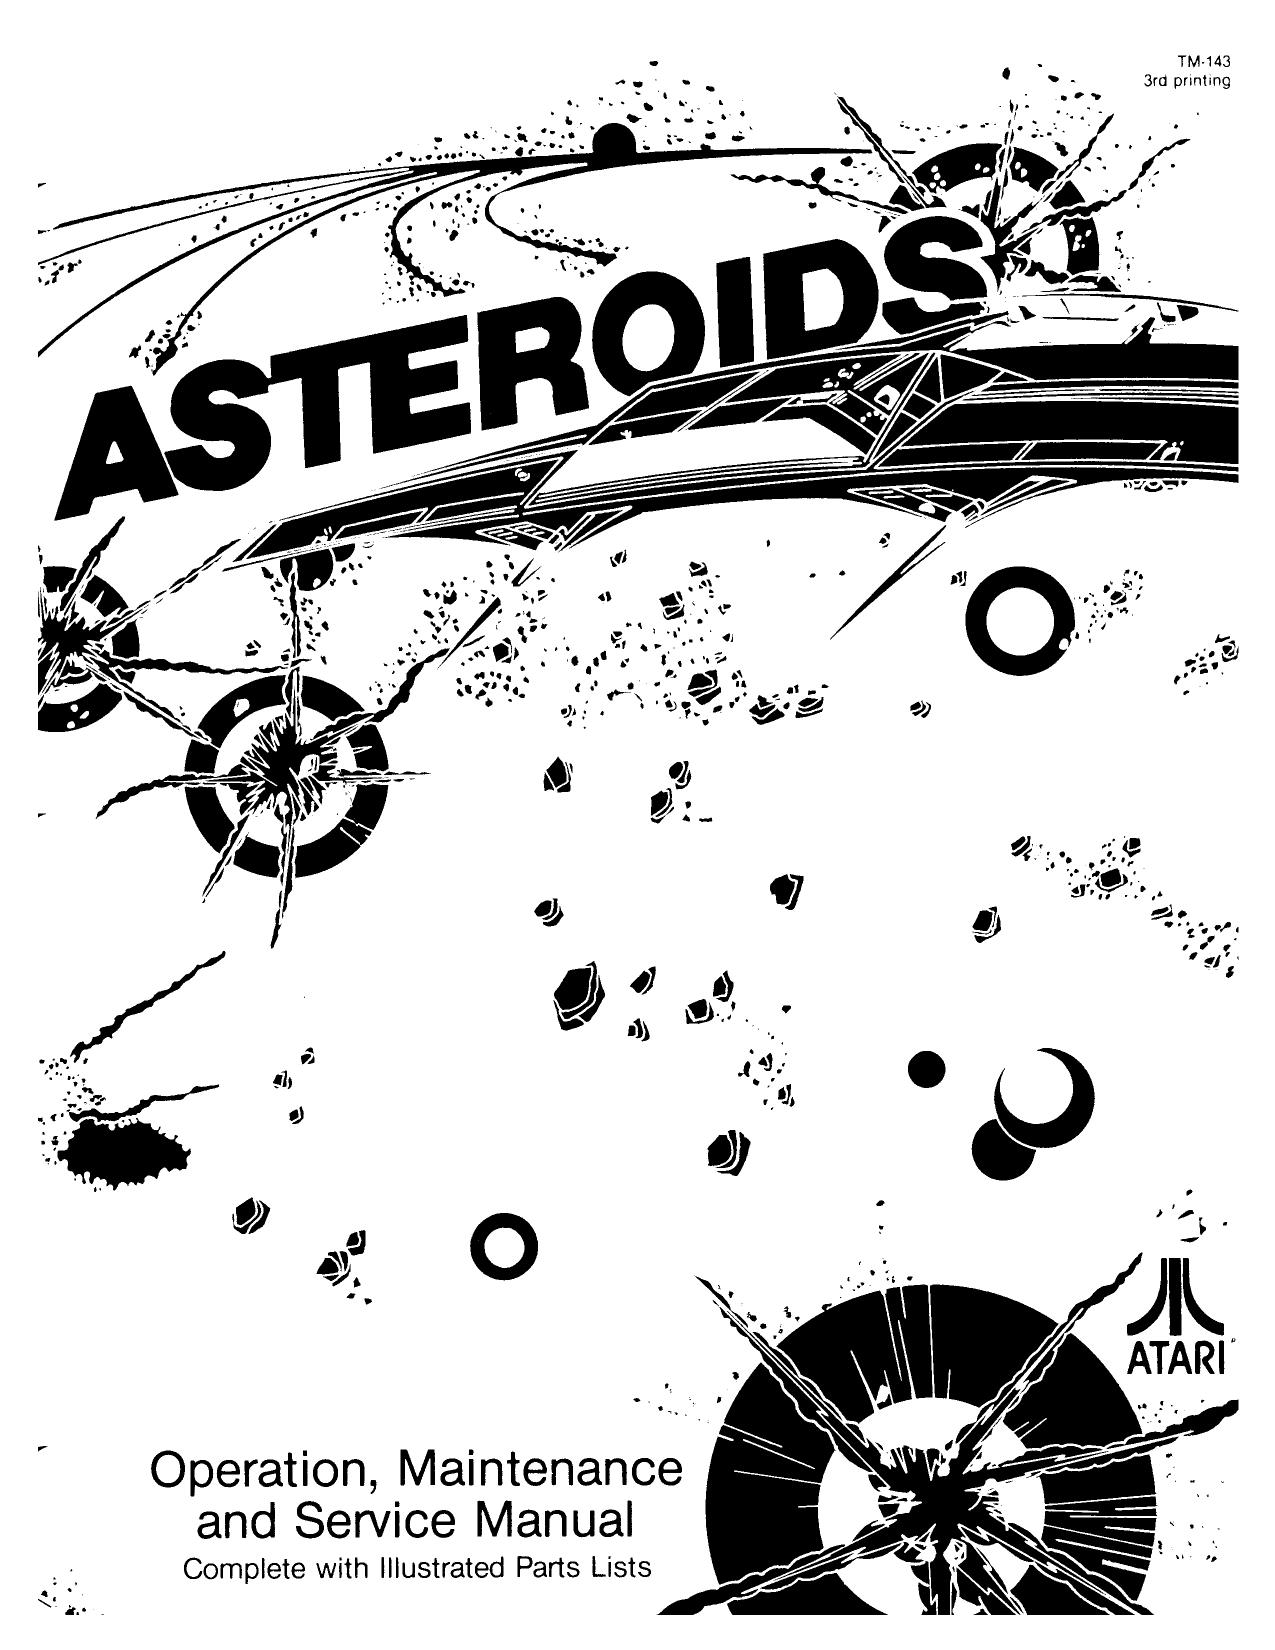 Asteroids (TM-143 3rd Printing) (Op-Maint-Serv-Parts) (U)